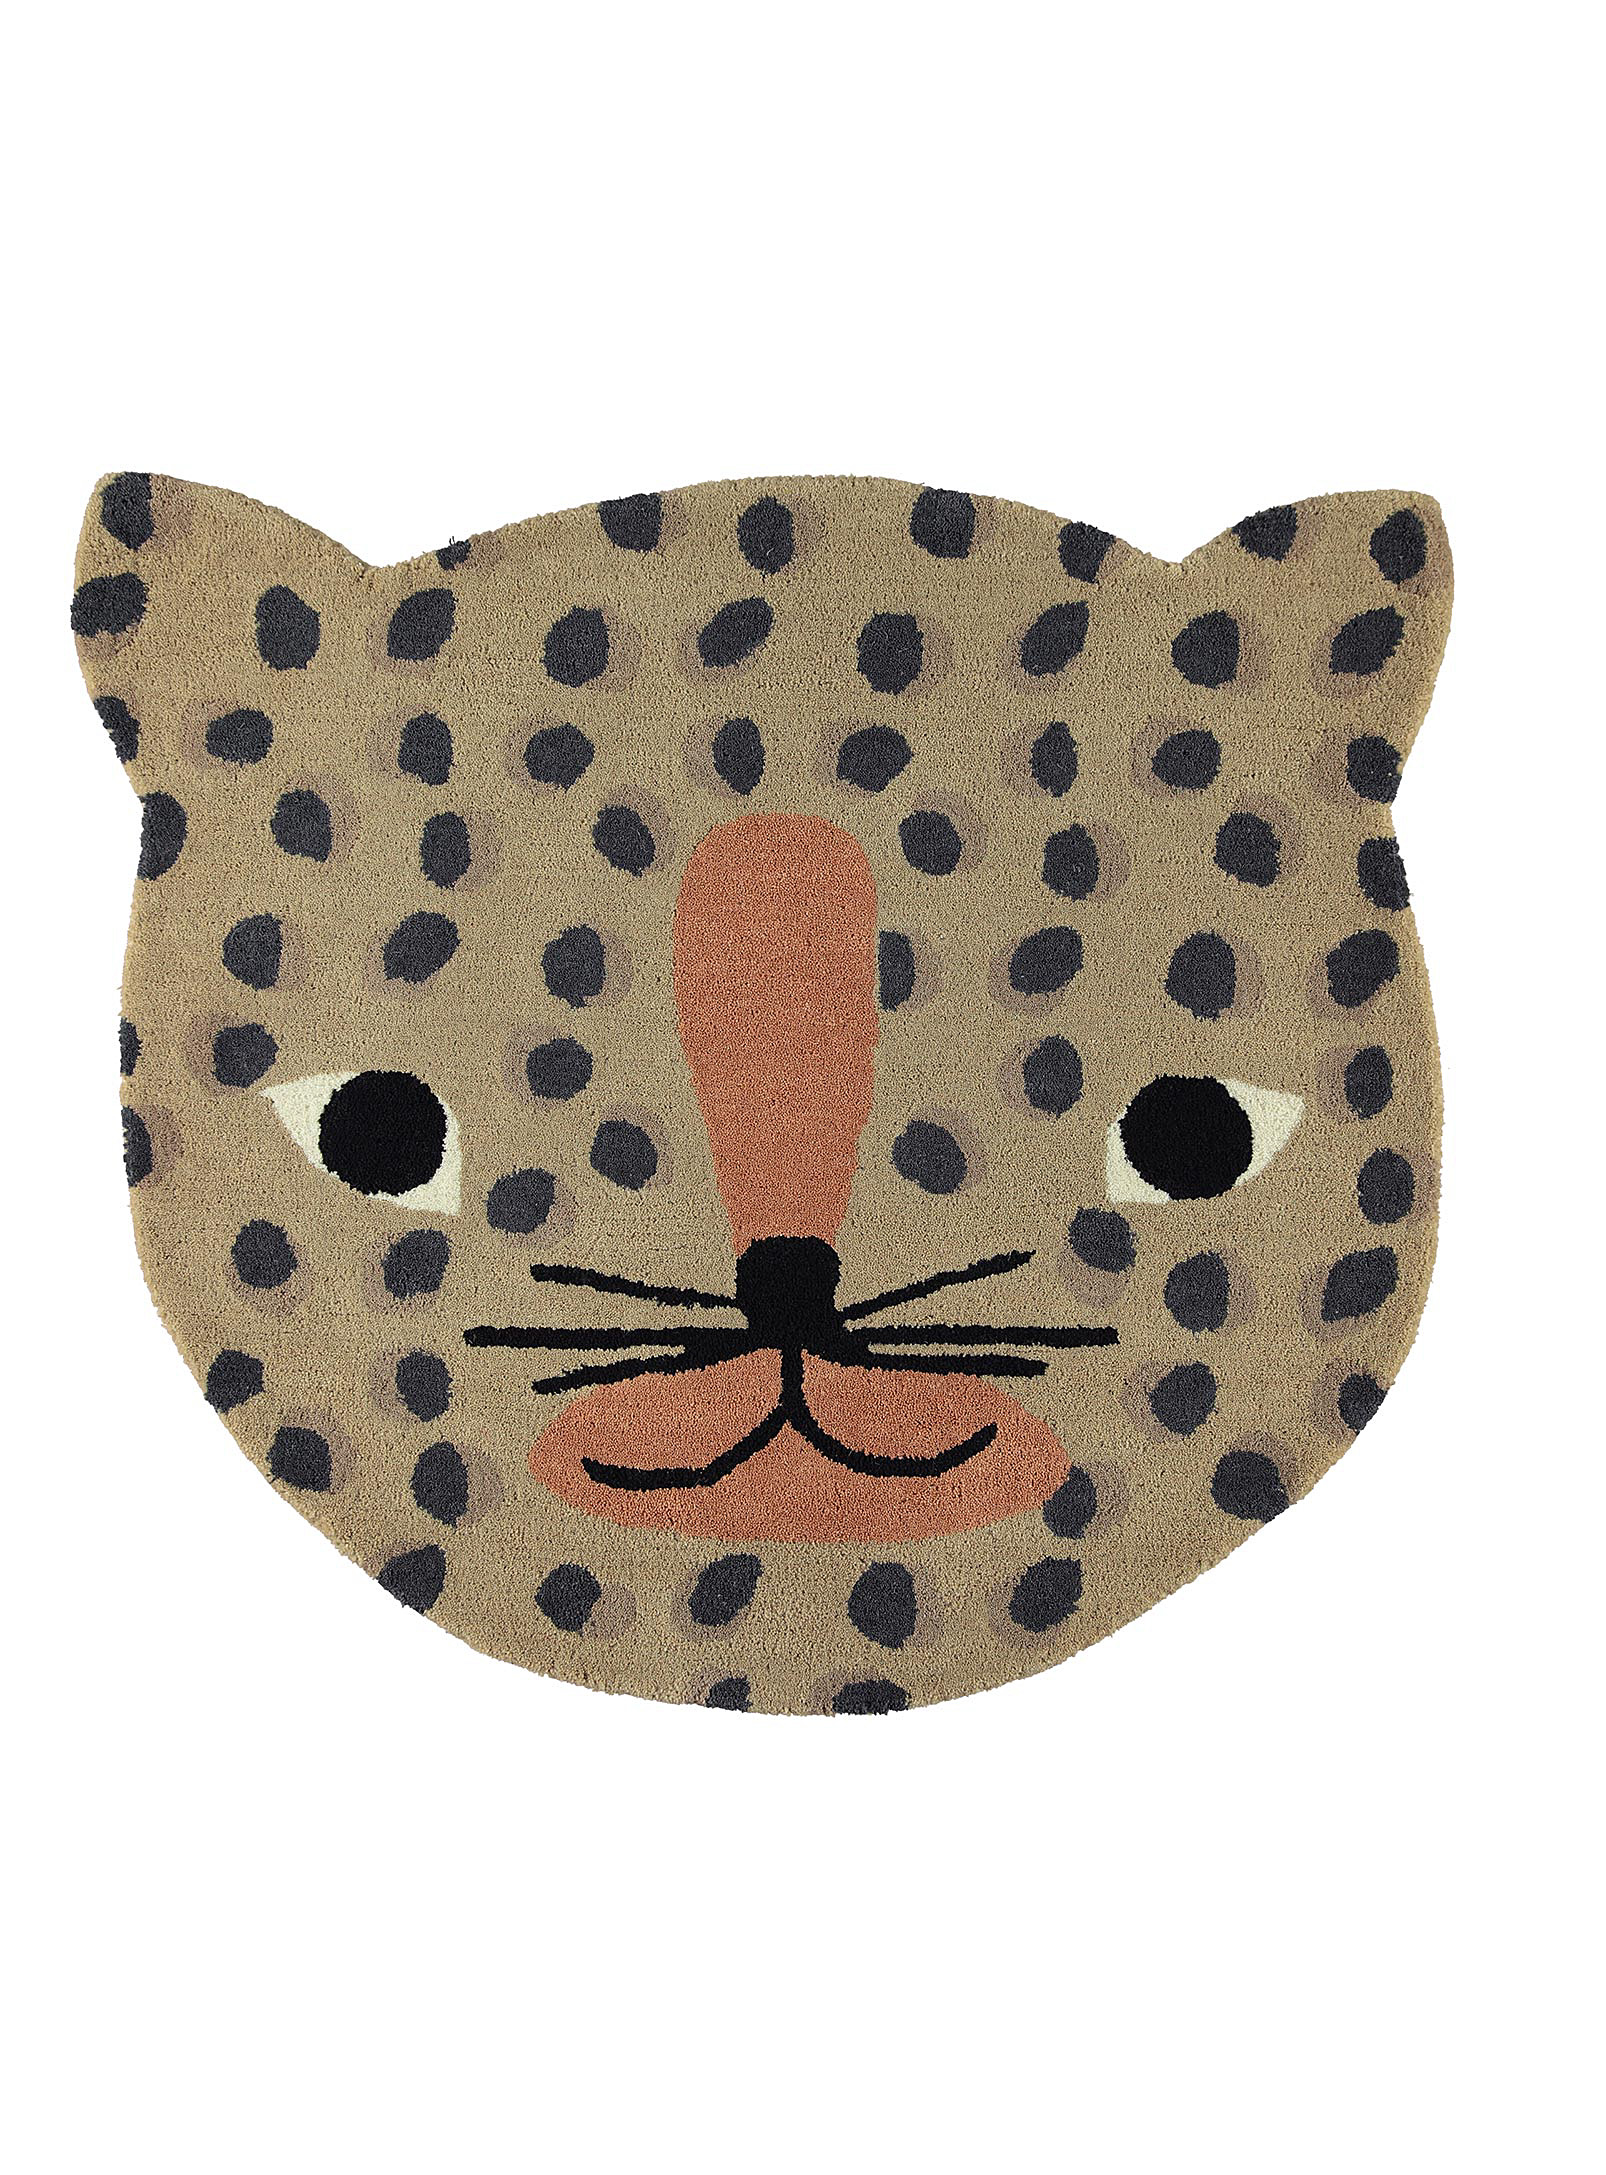 OYOY Living design - Le tapis léopard rusé 84 x 94 cm